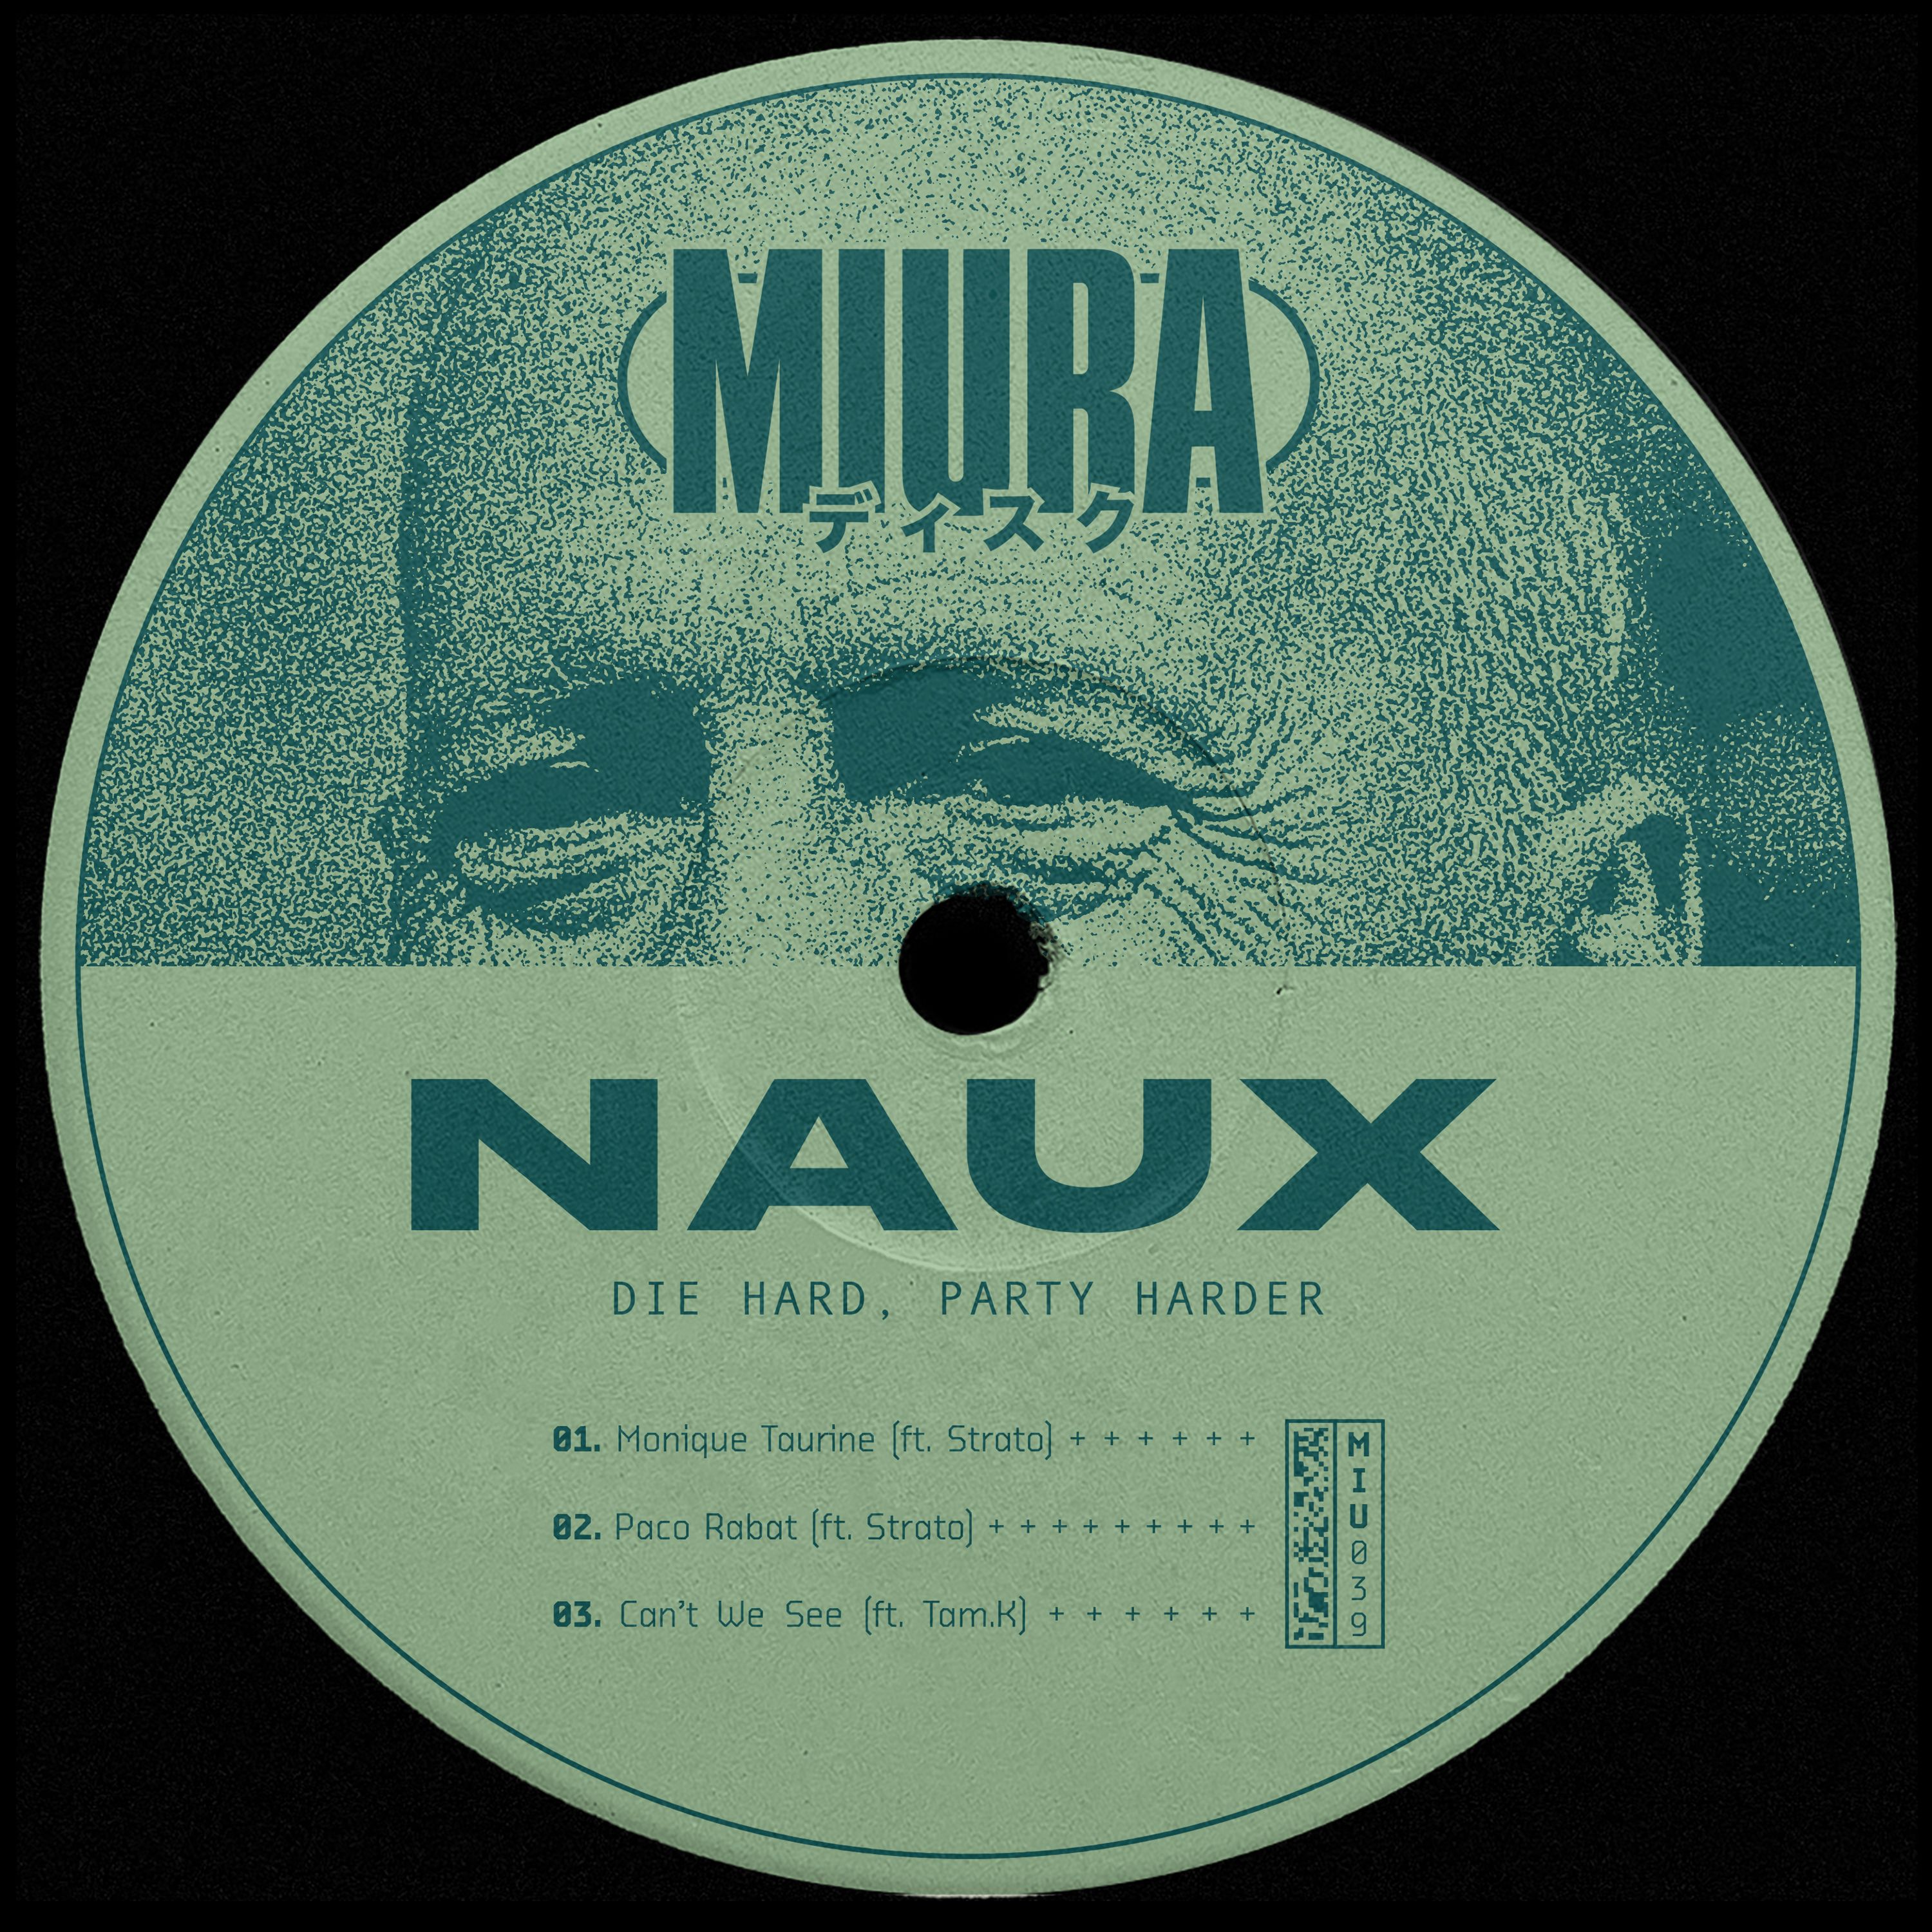 Scaricamento PREMIERE: Naux & Strato - Monique Taurine [Miura Records]